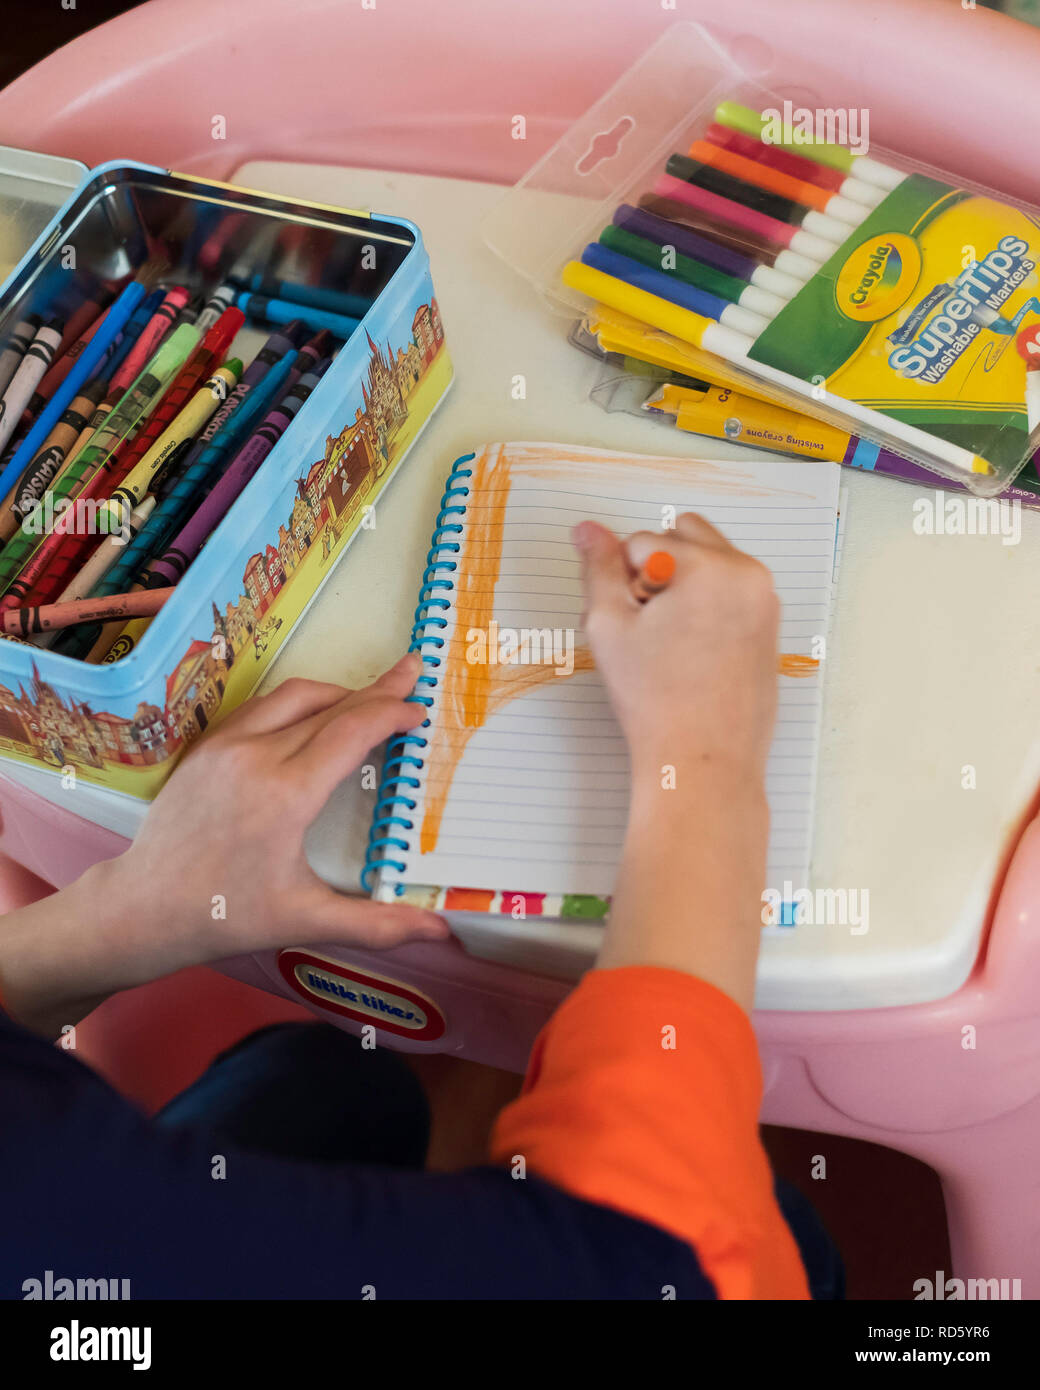 Crayola Supertips Washable Markers — INDIGO HIPPO